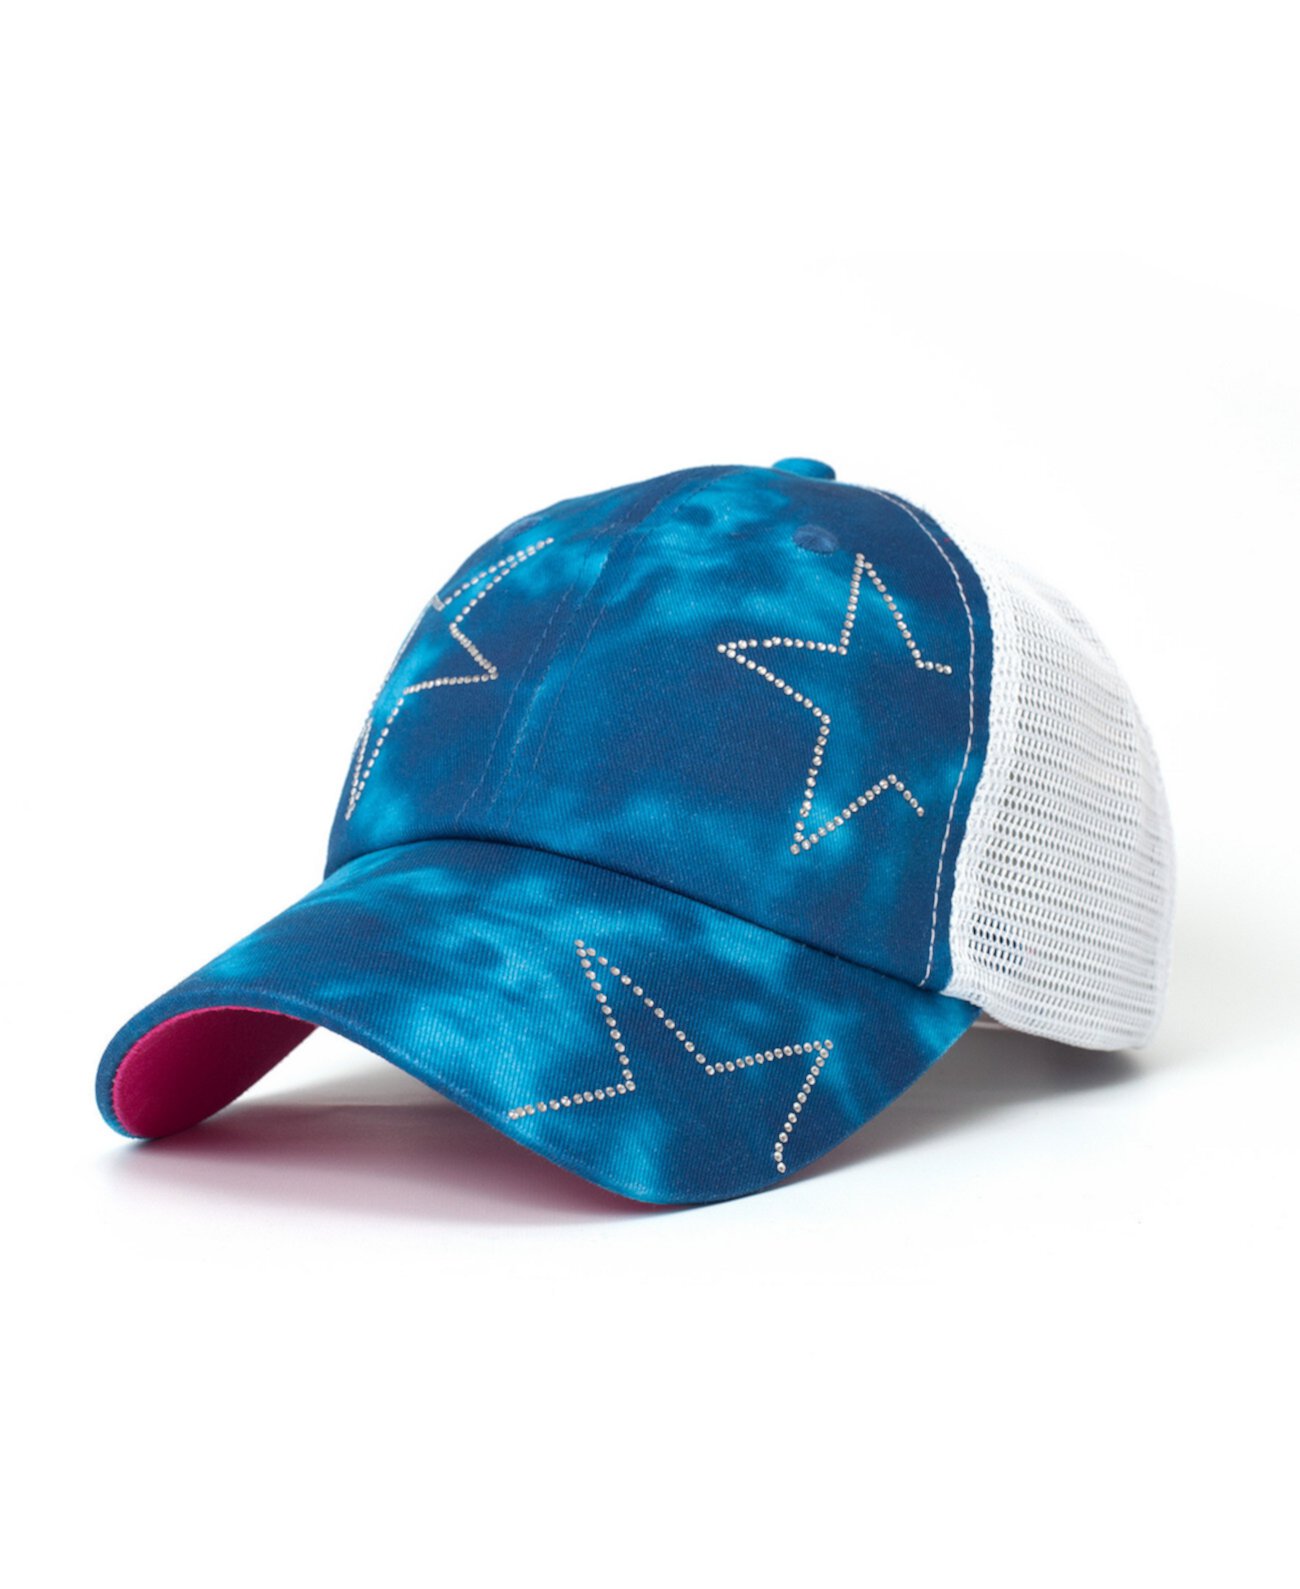 Регулируемая сетчатая кепка Starry Kids синего цвета с заклепками и звездами-дальнобойщиком Starry Kids Shady Lady